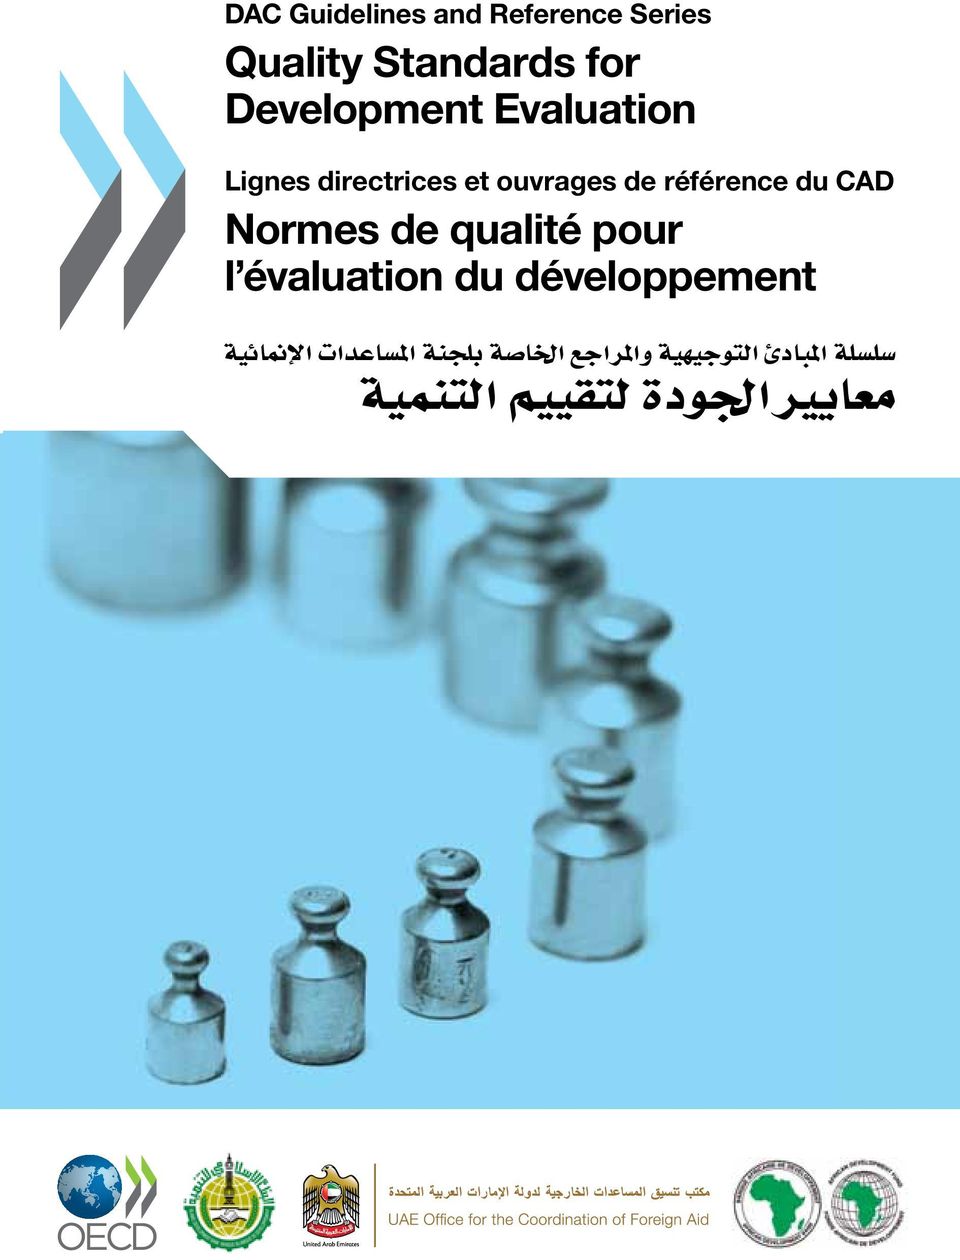 اجلودة لتقييم لتقييم التنمية التنمية Lignes Lignes directrices directrices et ouvrages et ouvrages de référence de référence du CADdu CAD Normes Normes de qualité de qualité